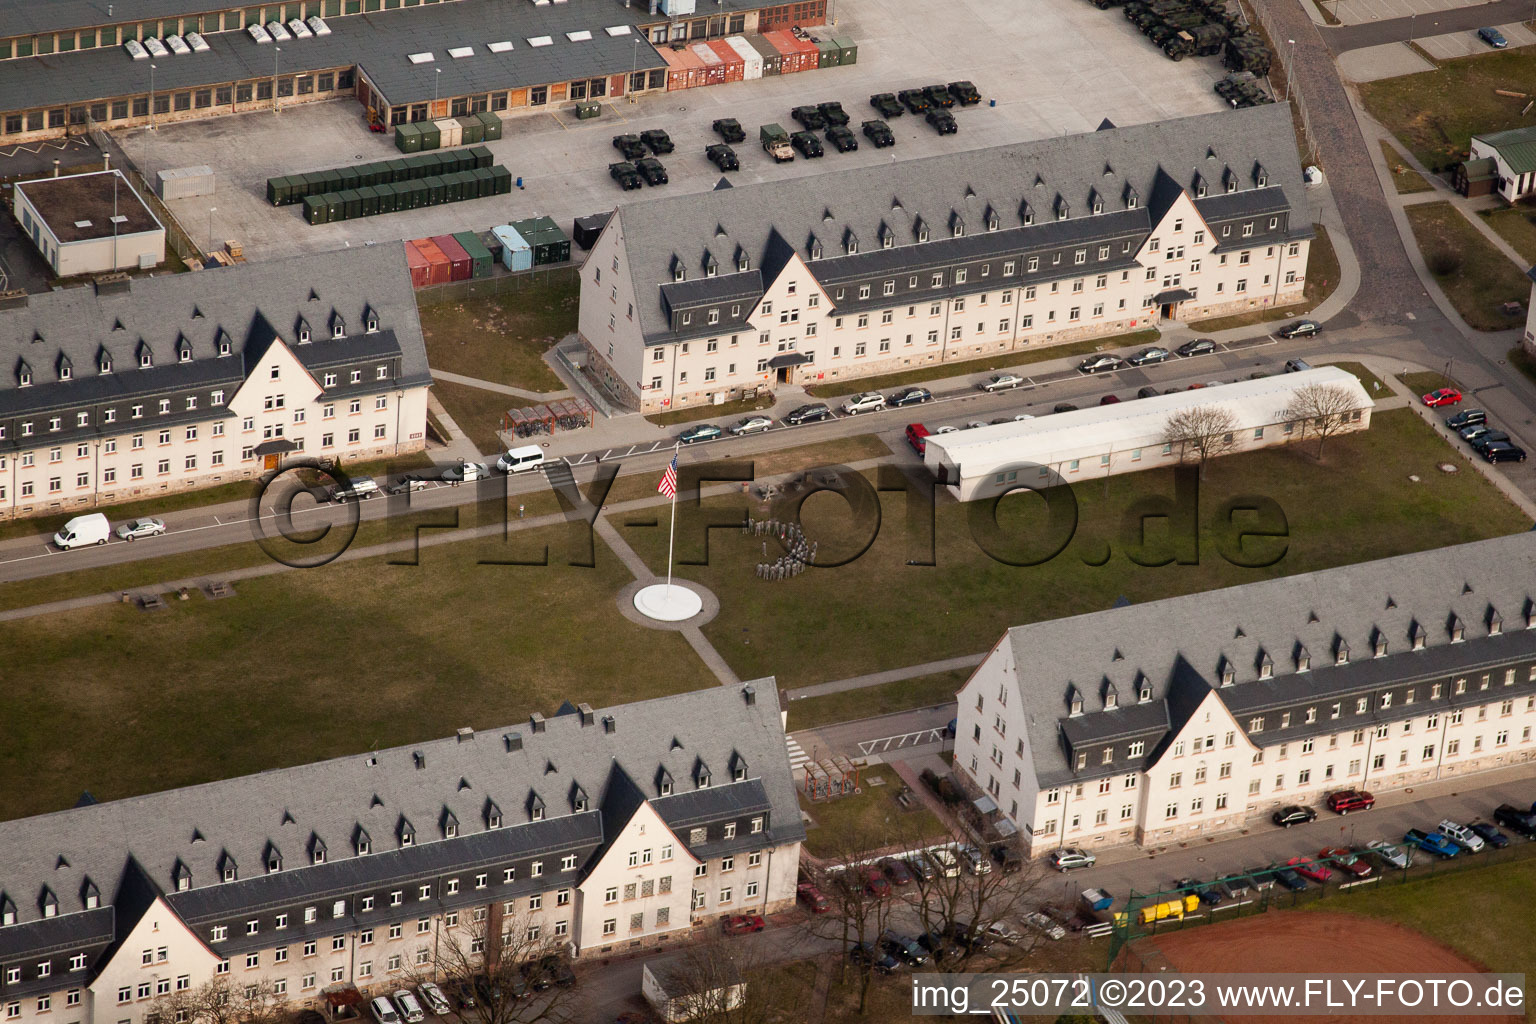 Caserne américaine à Schwetzingen dans le département Bade-Wurtemberg, Allemagne hors des airs